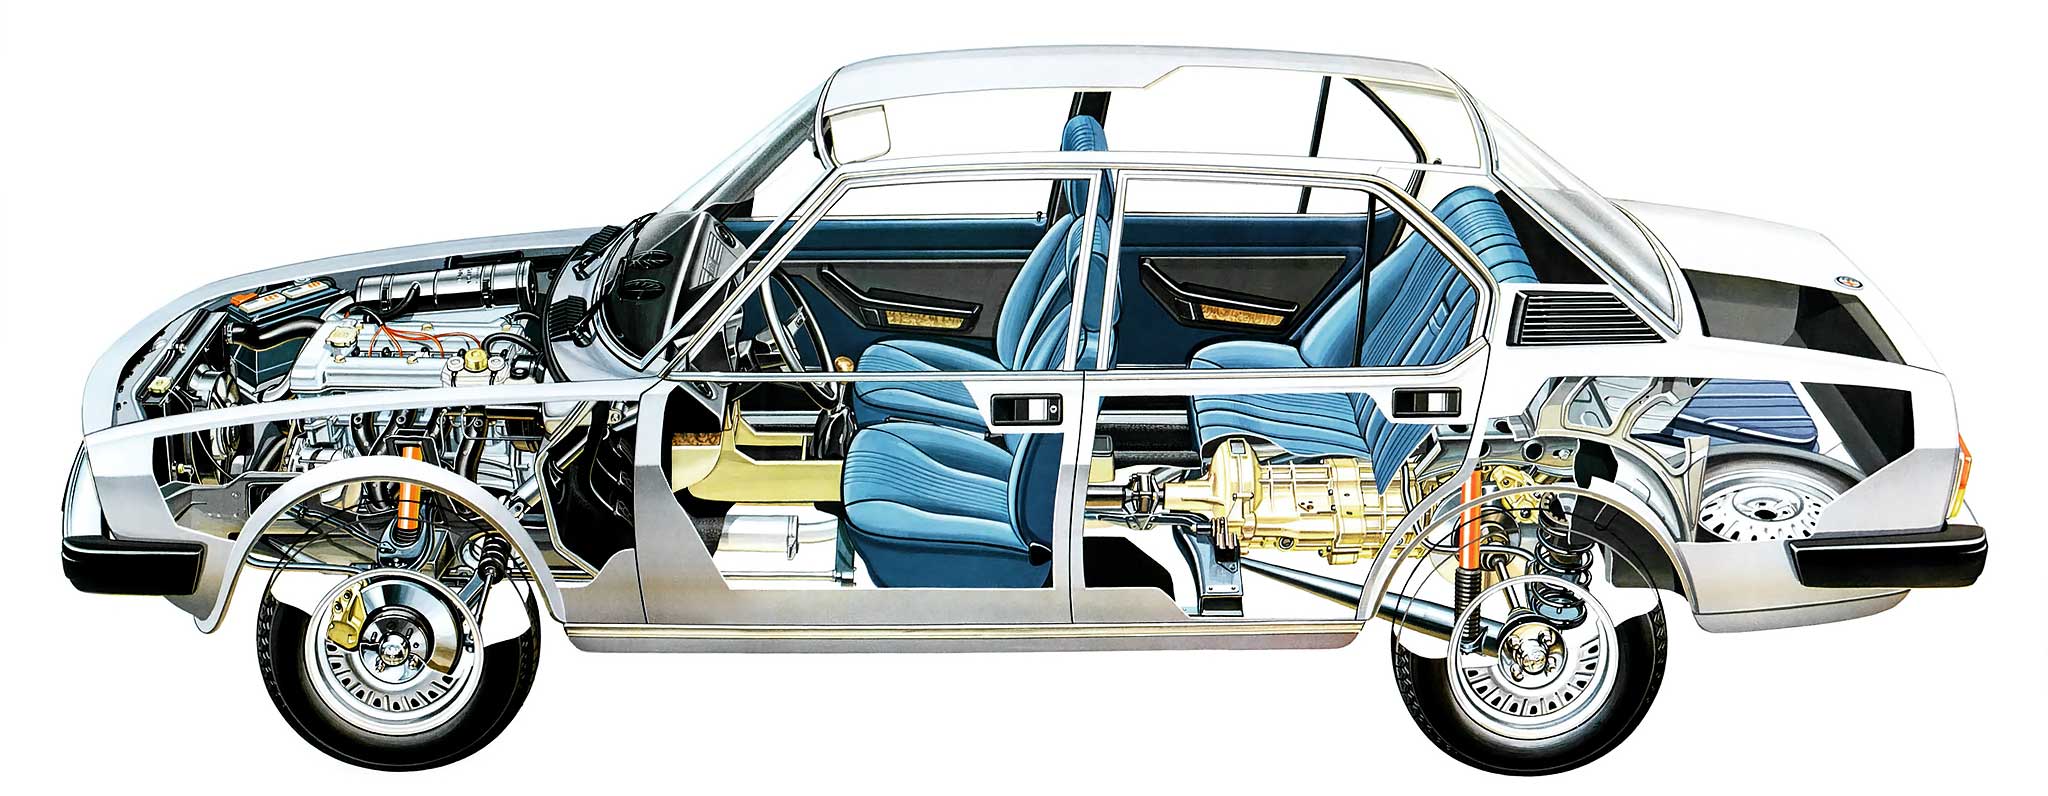 Alfetta 116 cutaway